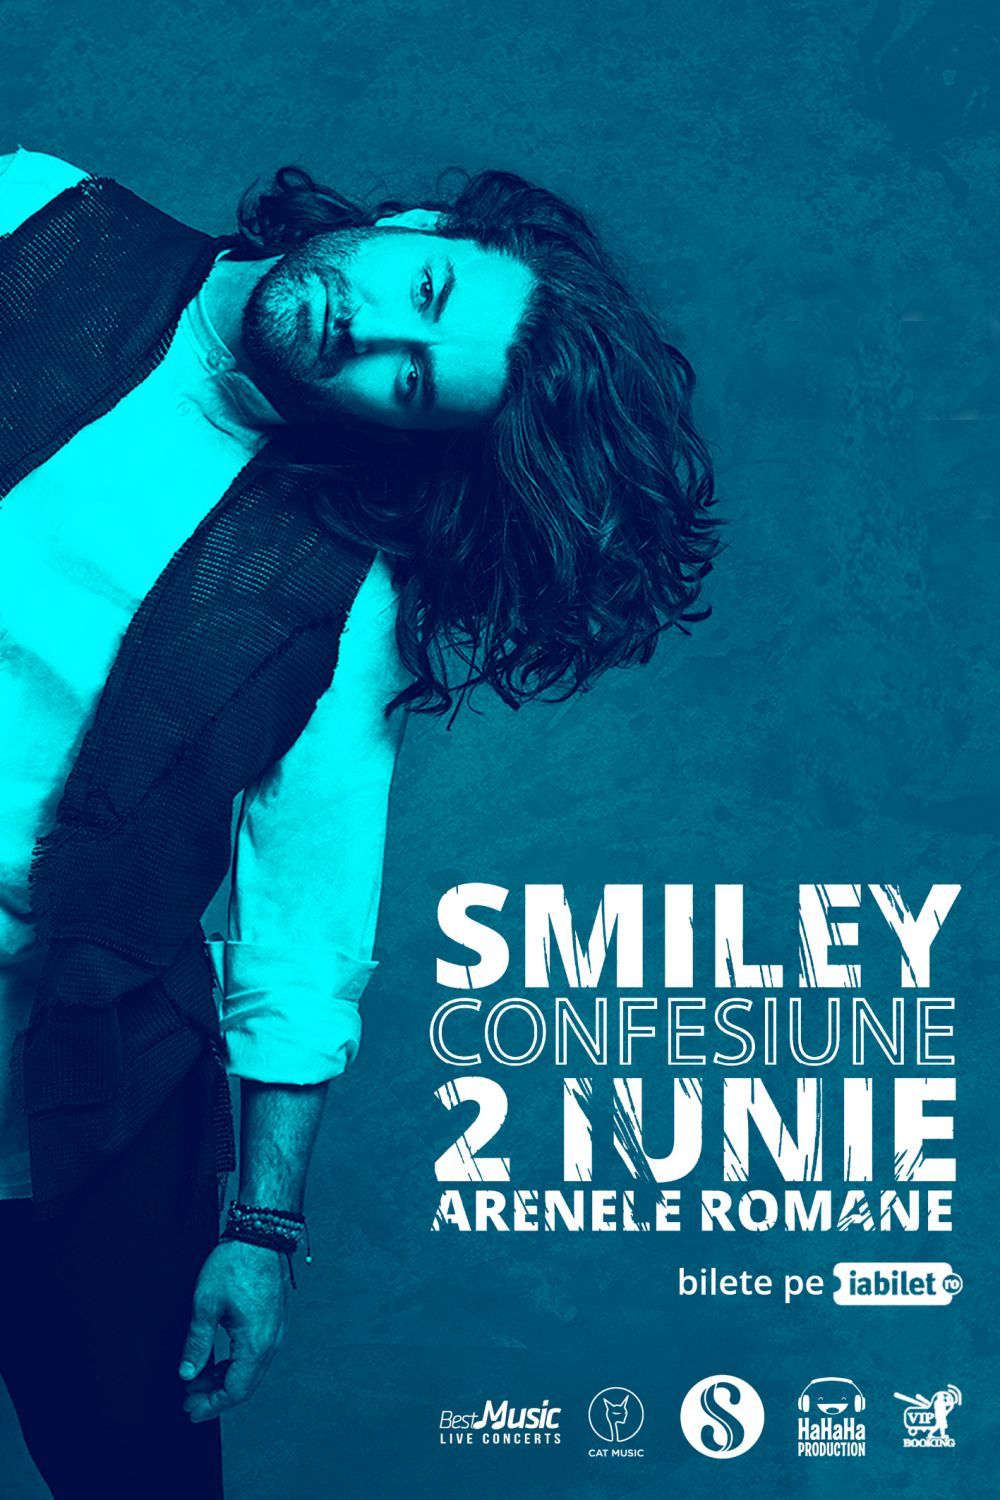 Smiley va susține un nou concert la Arenele Romane, pe 2 iunie